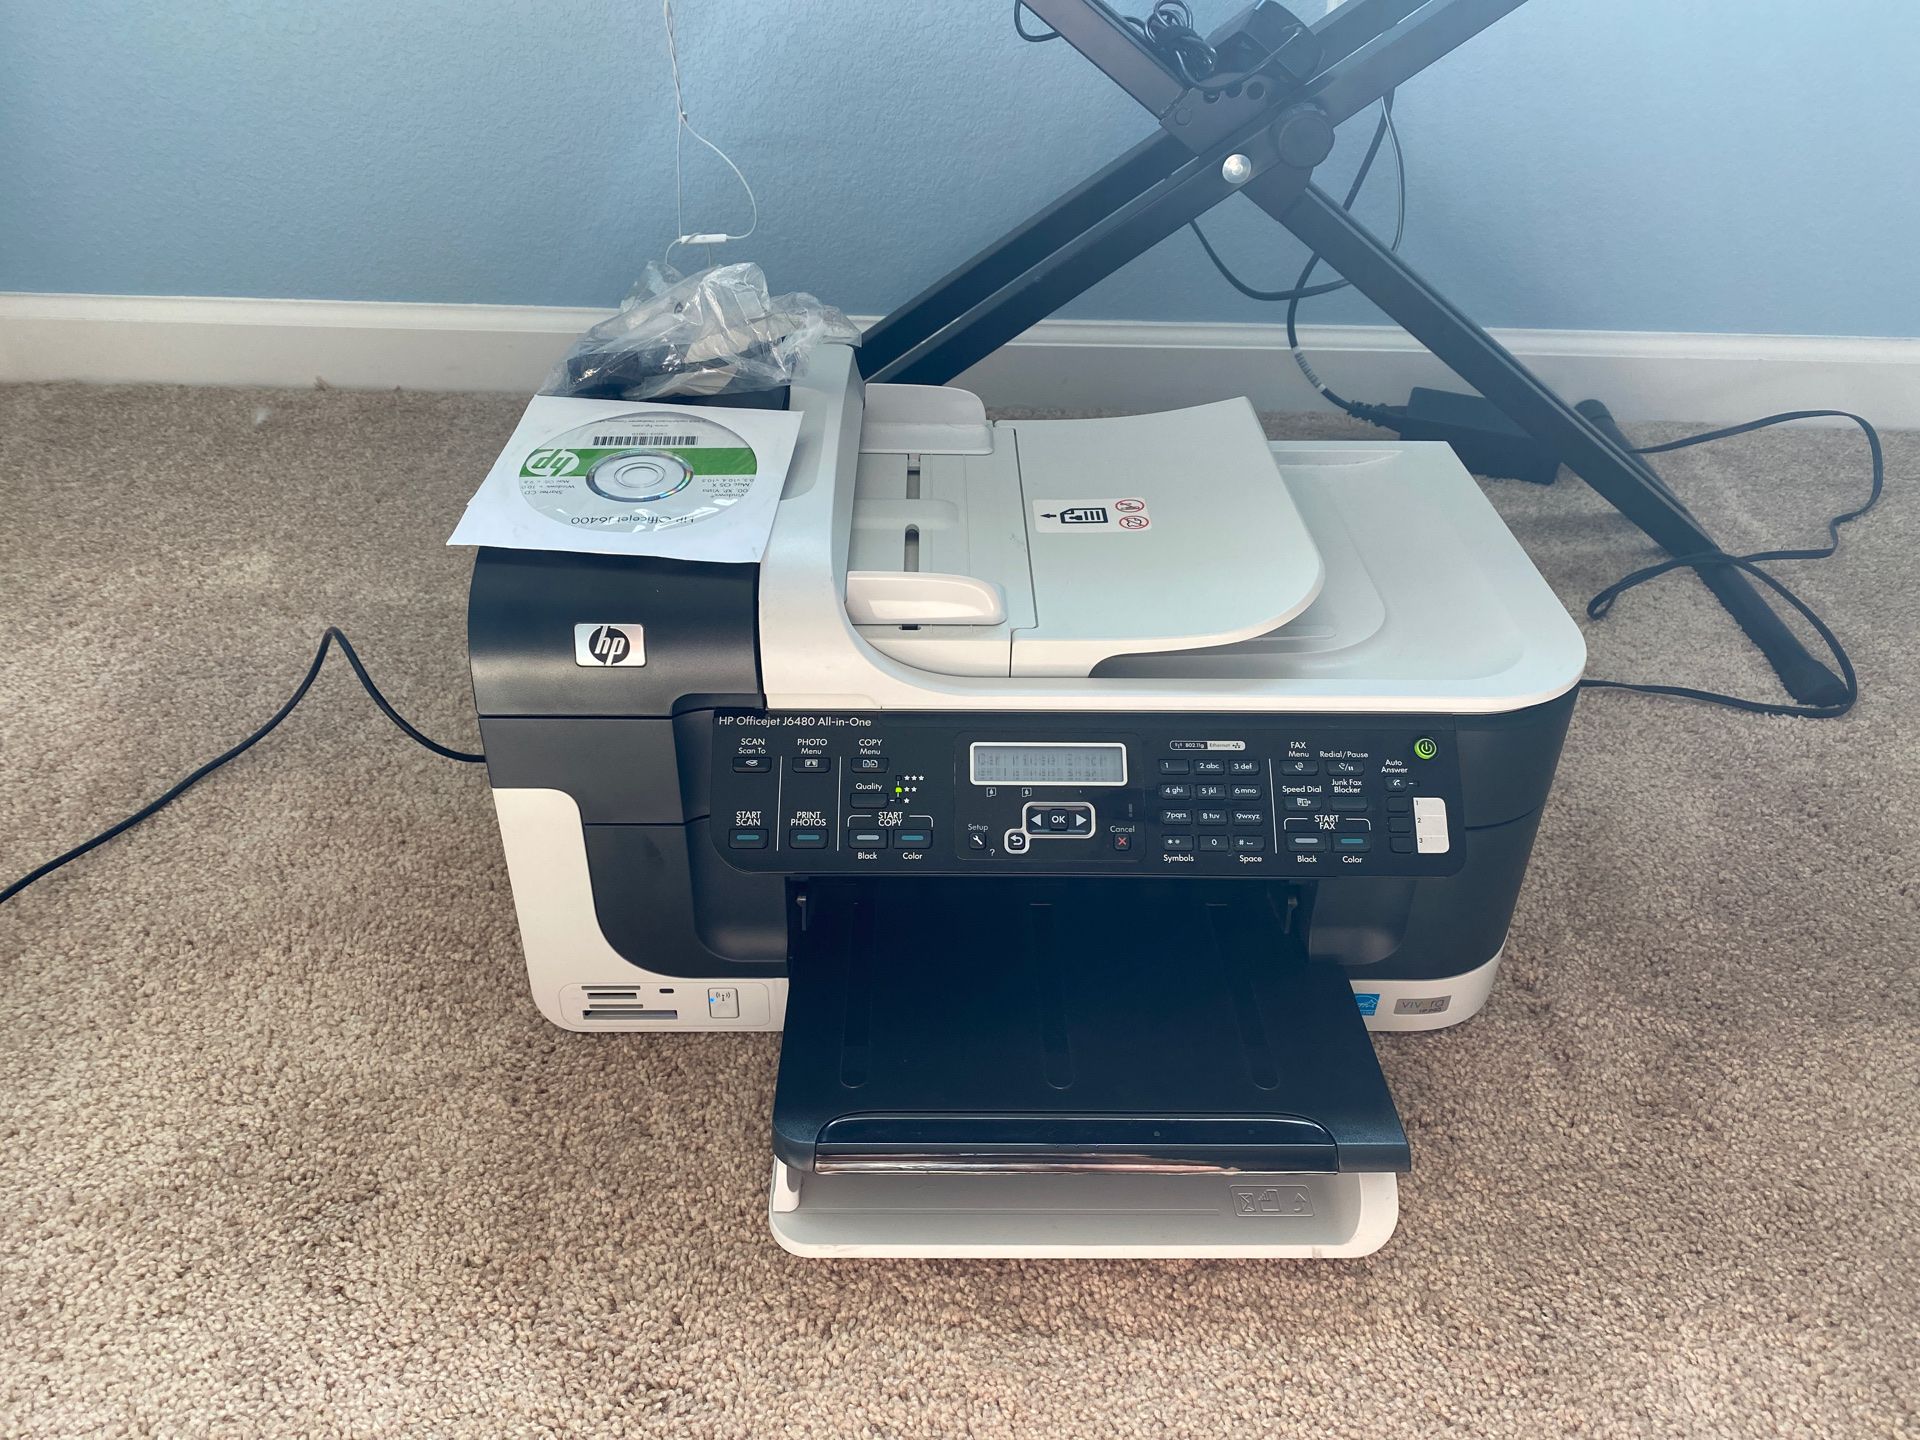 Printer, scanner, copier, fax machine